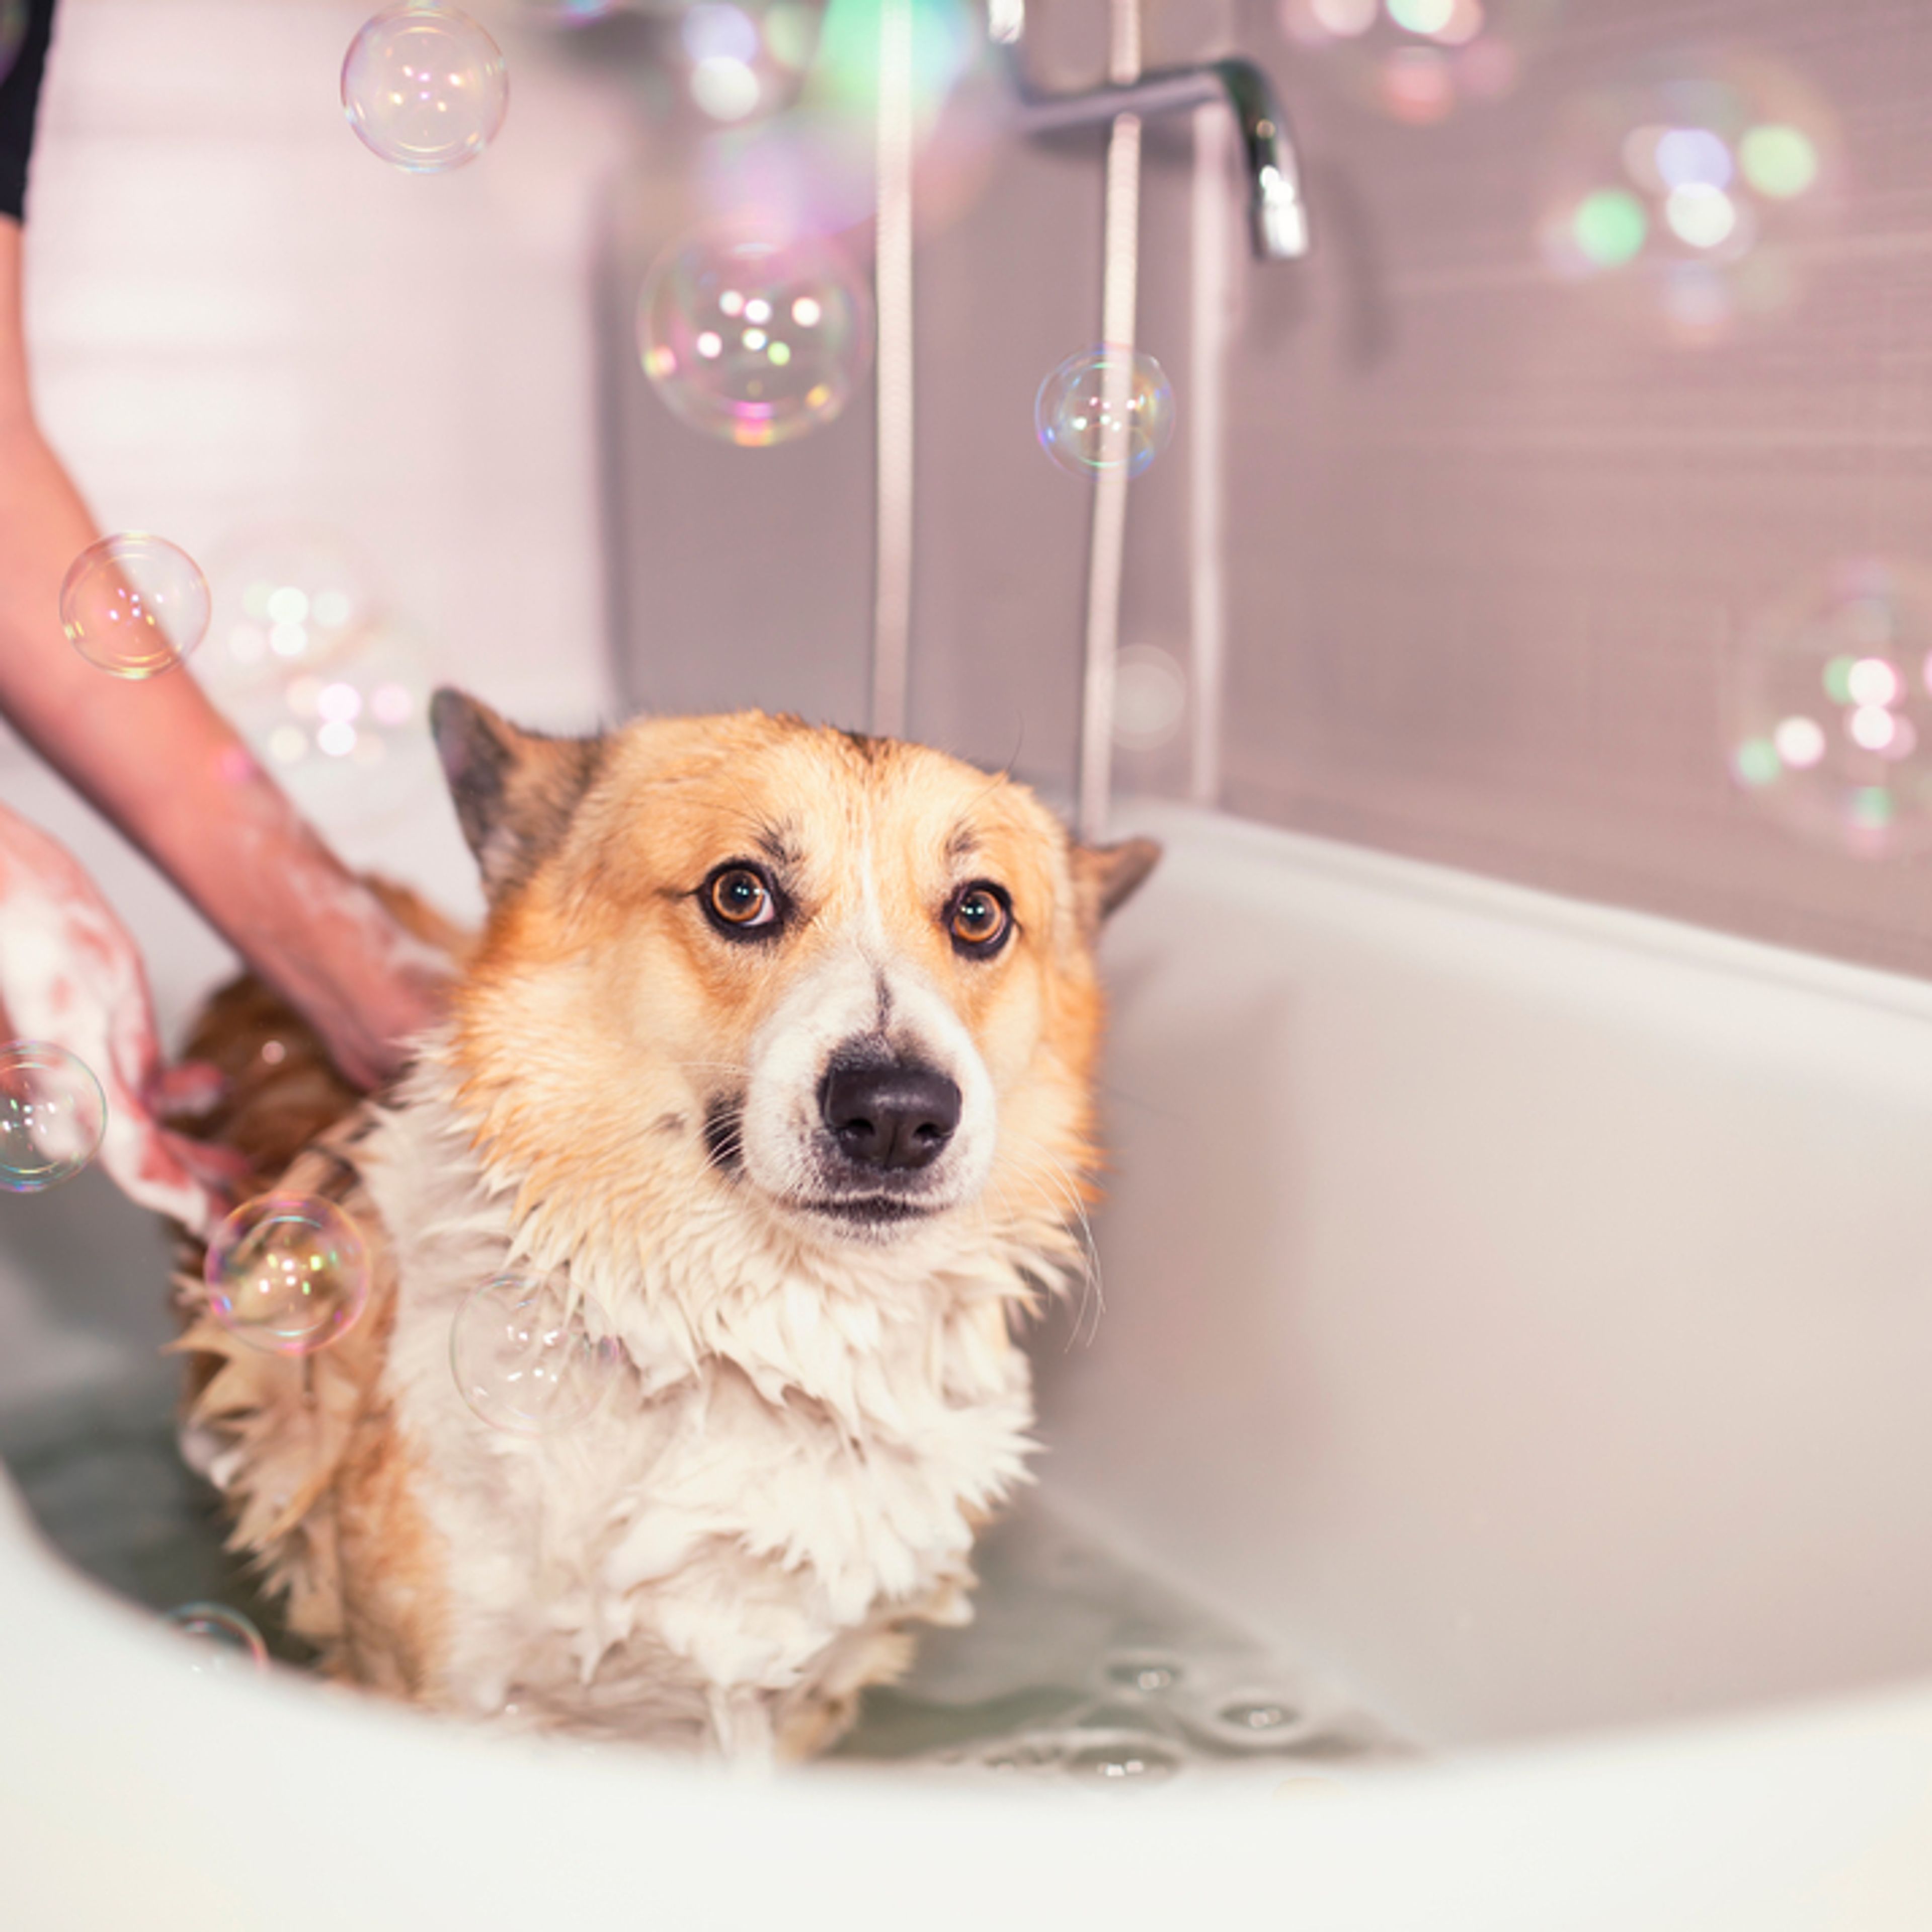 cane viene lavato nella vasca